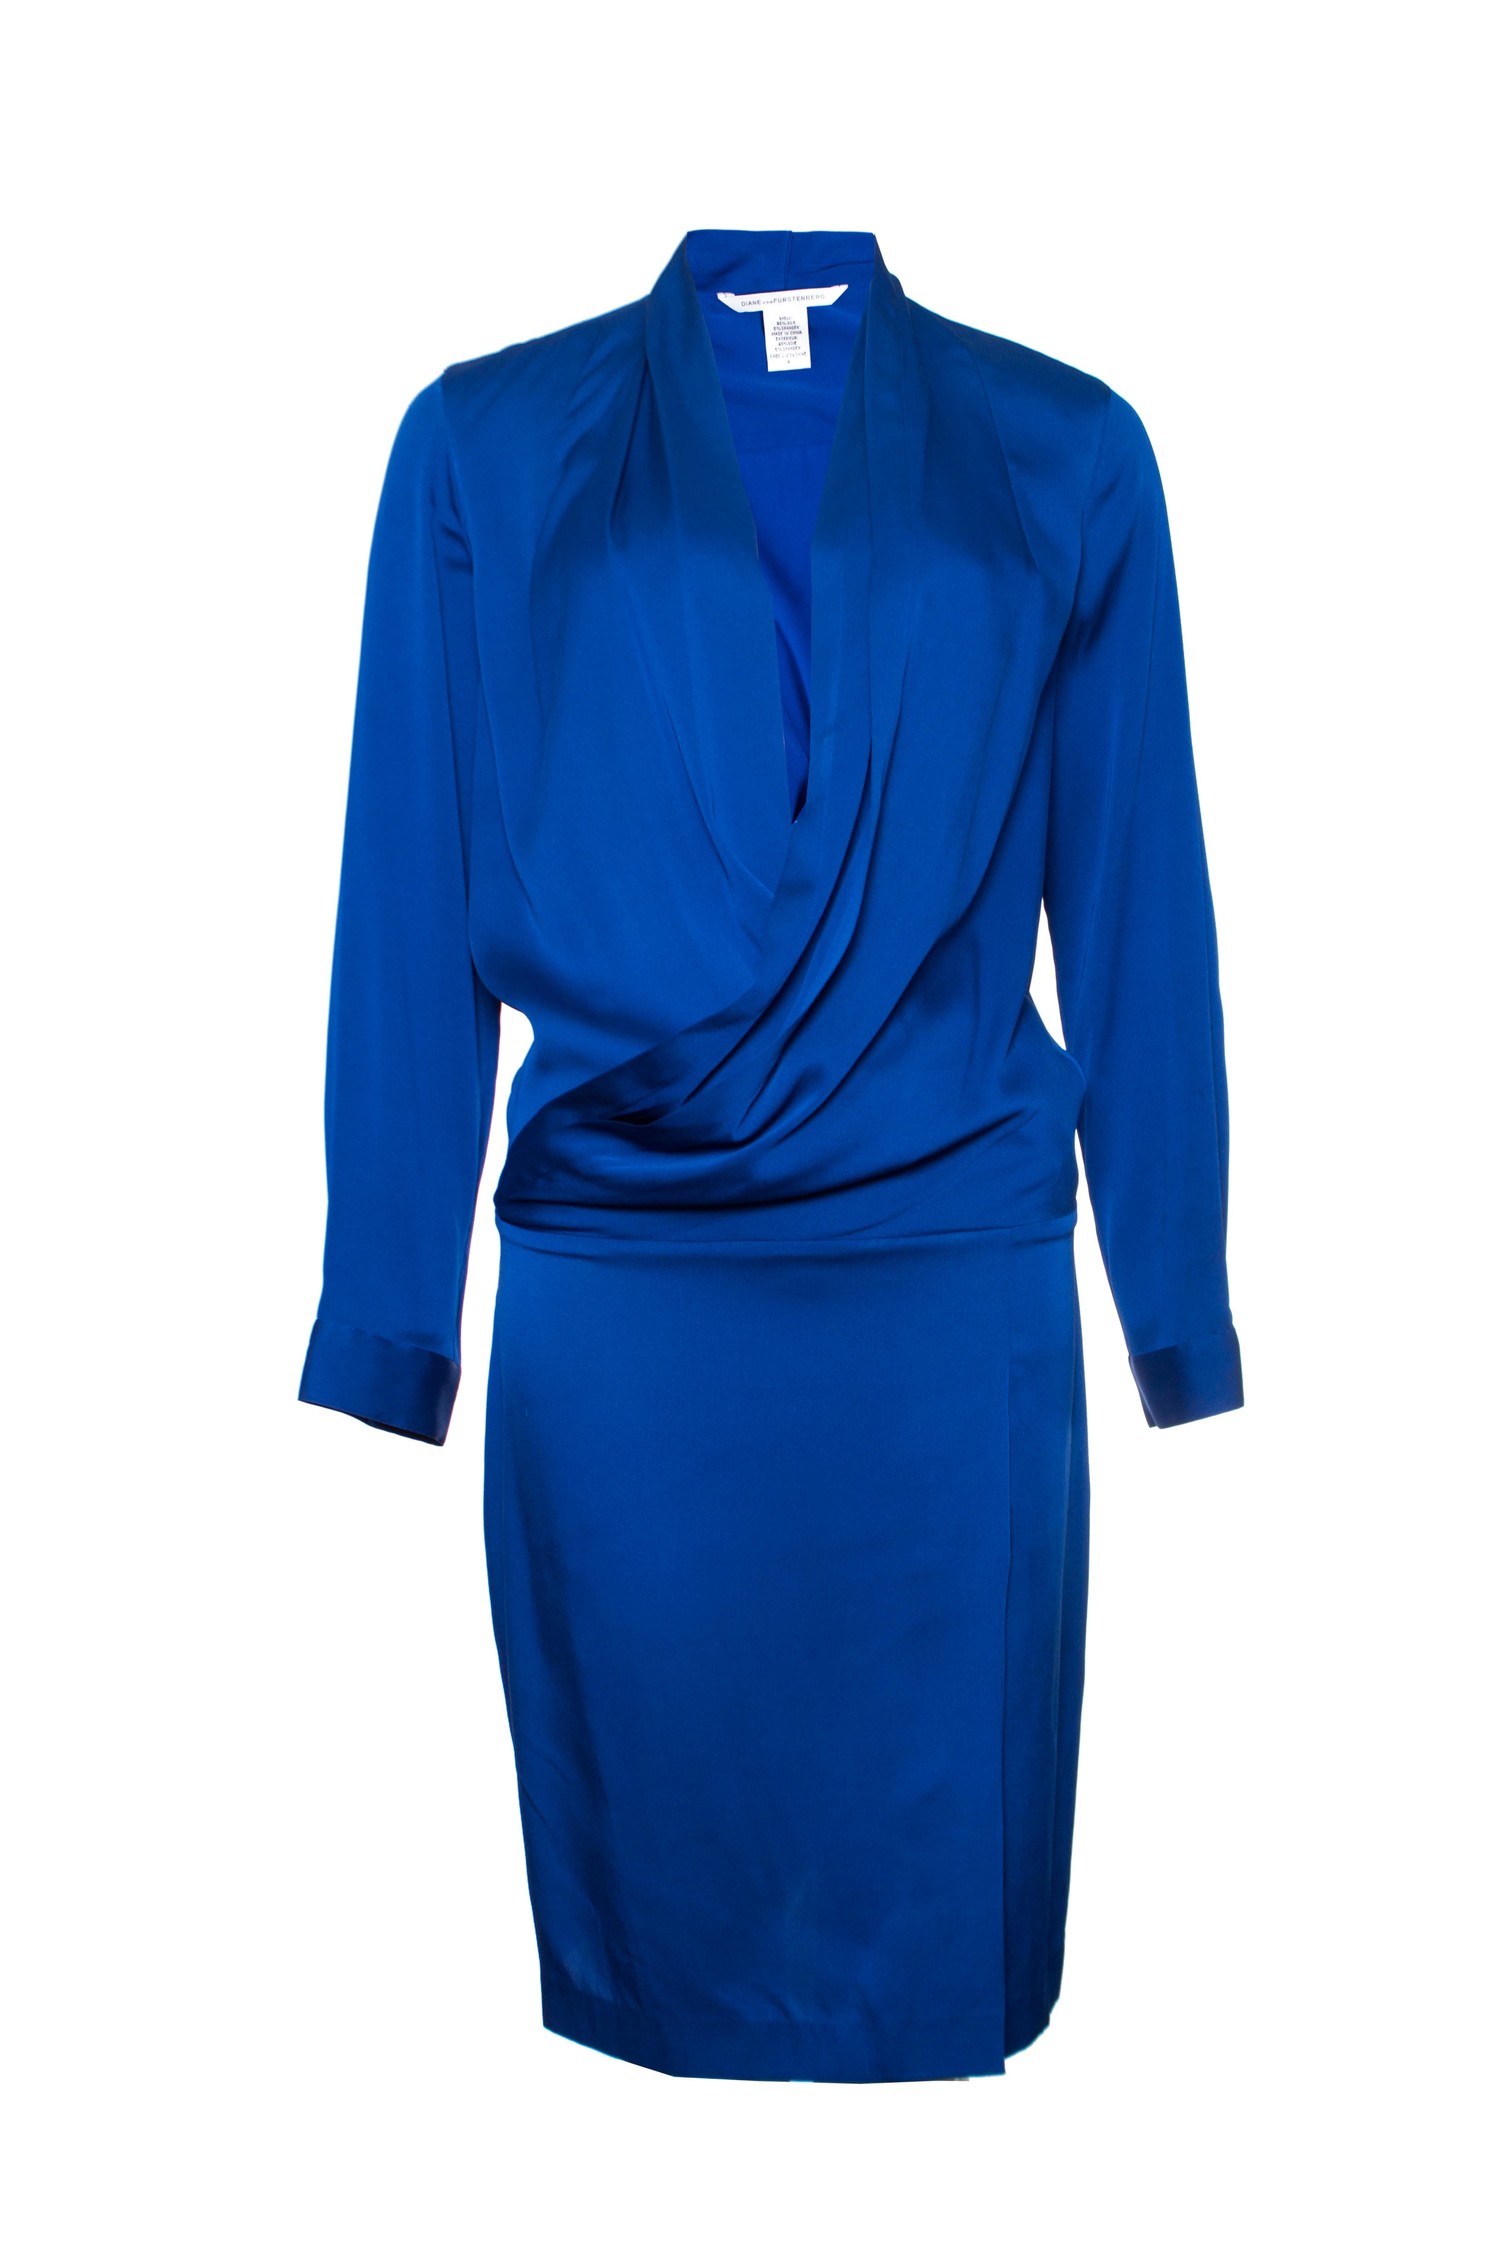 regionaal verhaal Lastig Diane von Furstenberg, zijde jurk in Kobalt blauw - Unique Designer Pieces